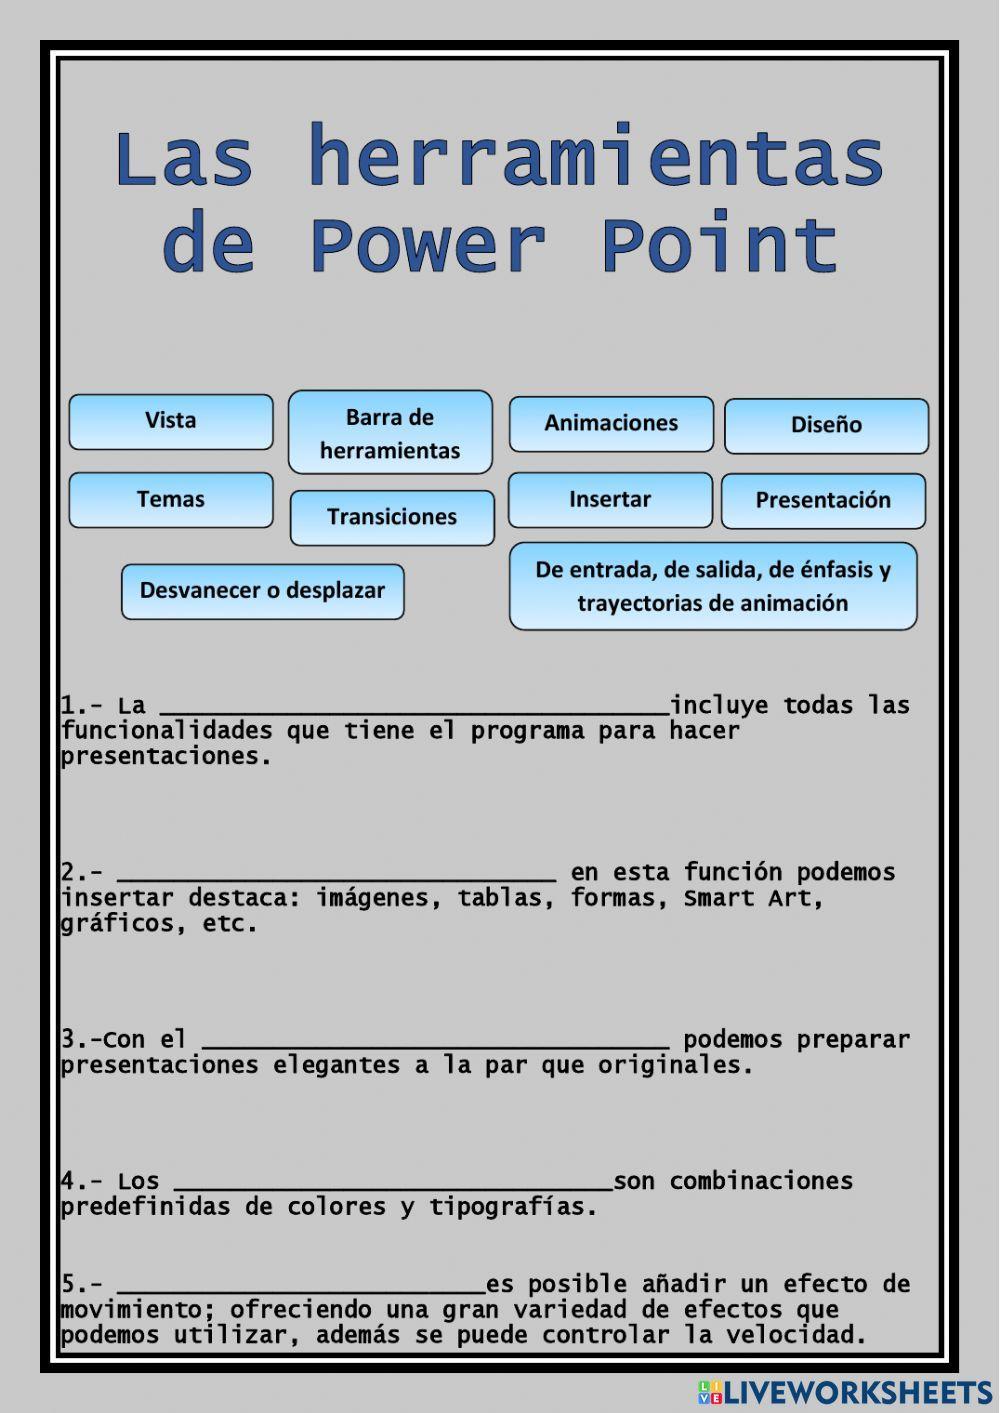 Las herramientas de Power Point